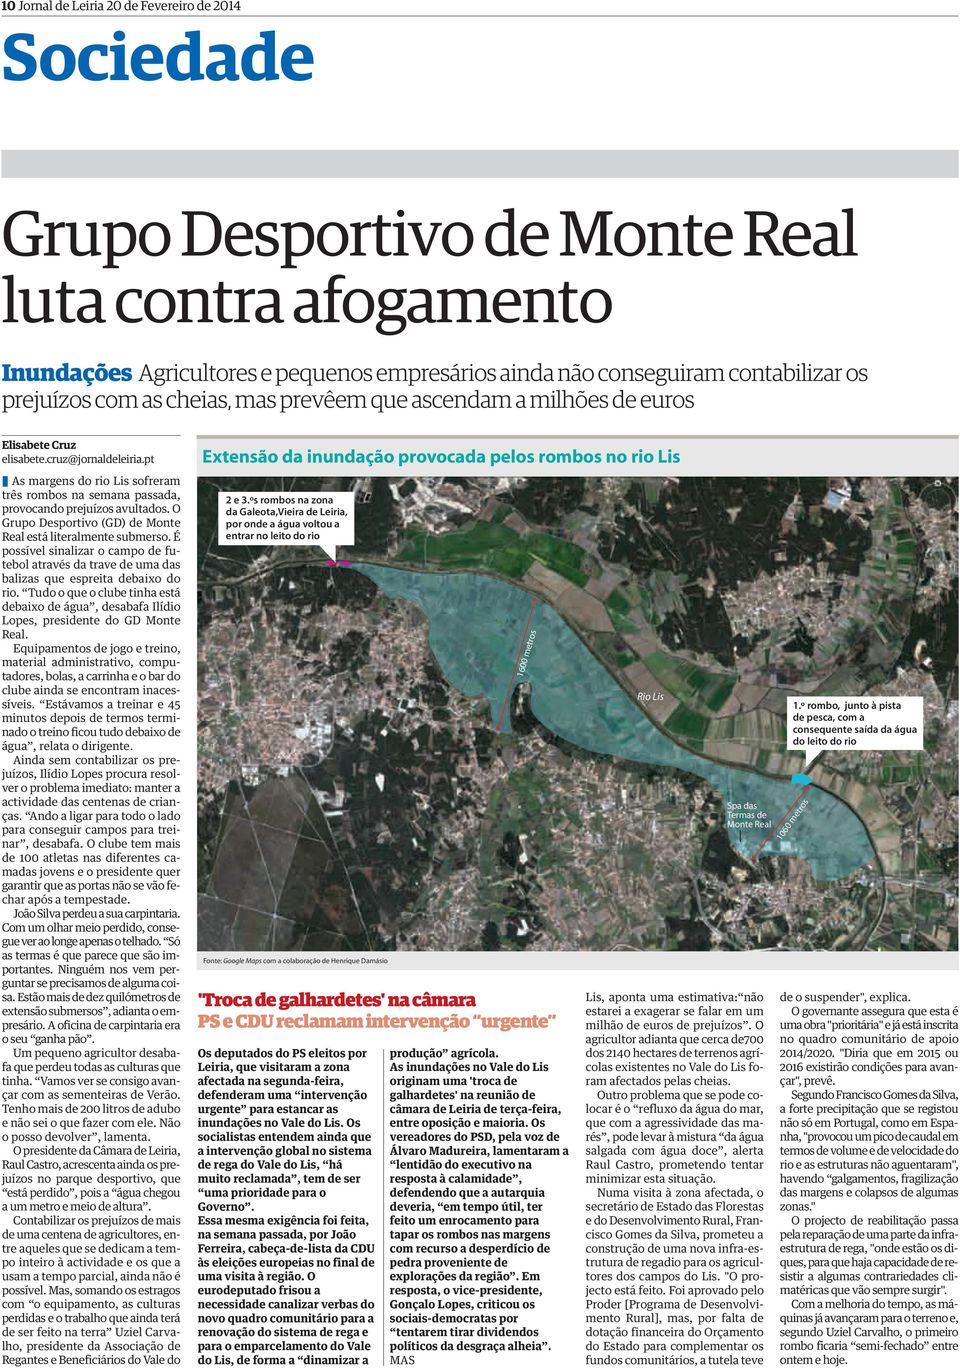 pt As margens do rio Lis sofreram três rombos na semana passada, provocando prejuízos avultados. O Grupo Desportivo (GD) de Monte Real está literalmente submerso.